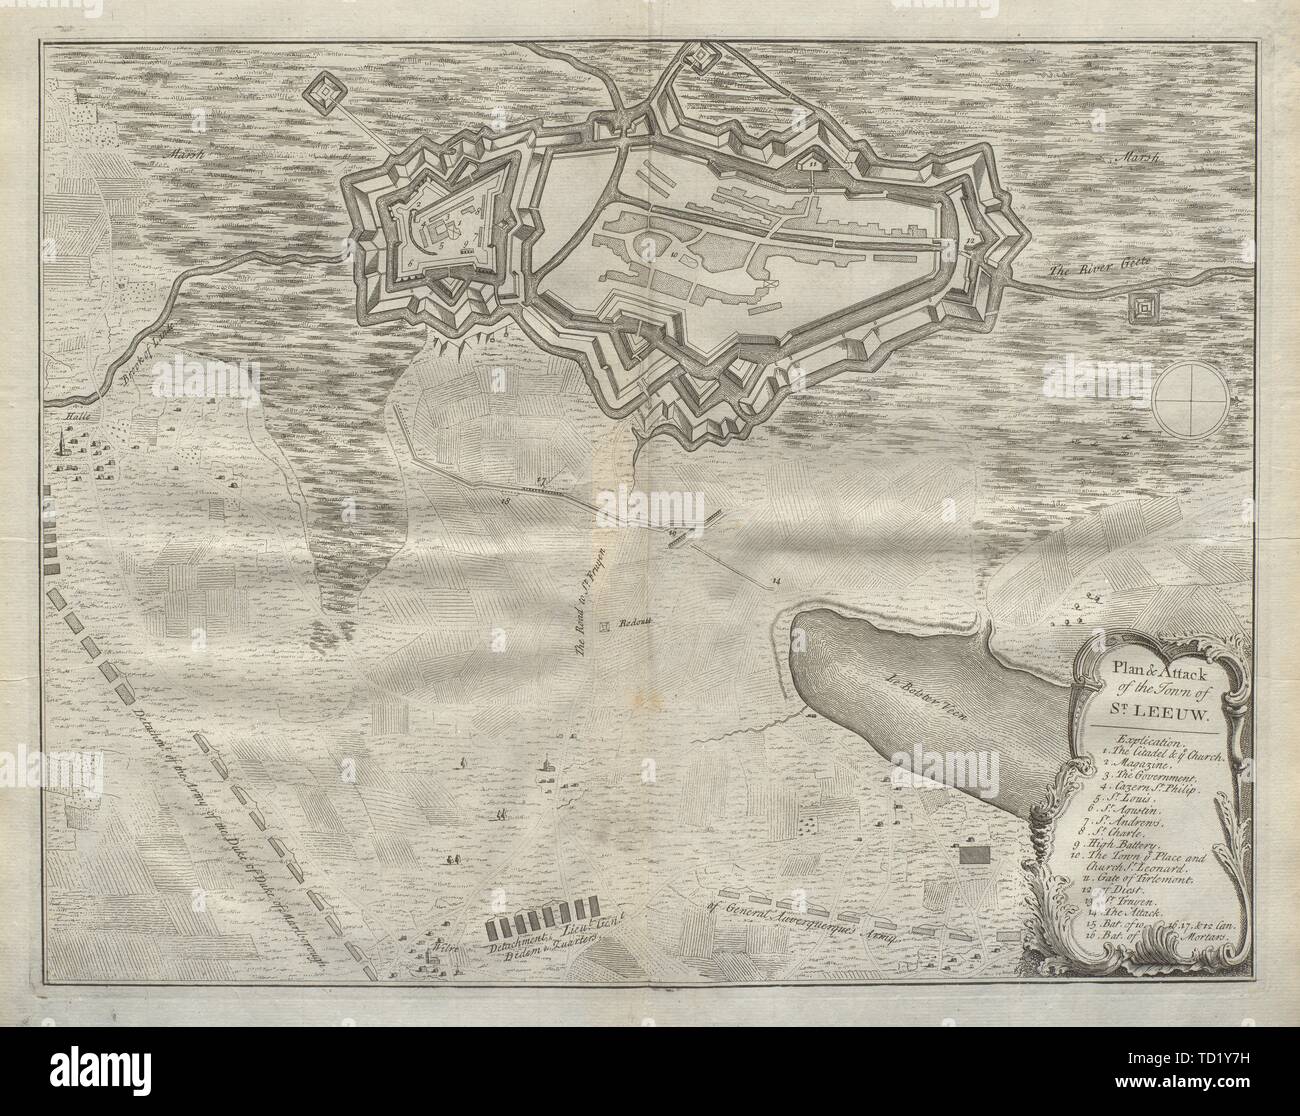 Piano di attacco della città di San Leeuw. Zoutleeuw, Belgio. DU BOSC 1736 mappa Foto Stock